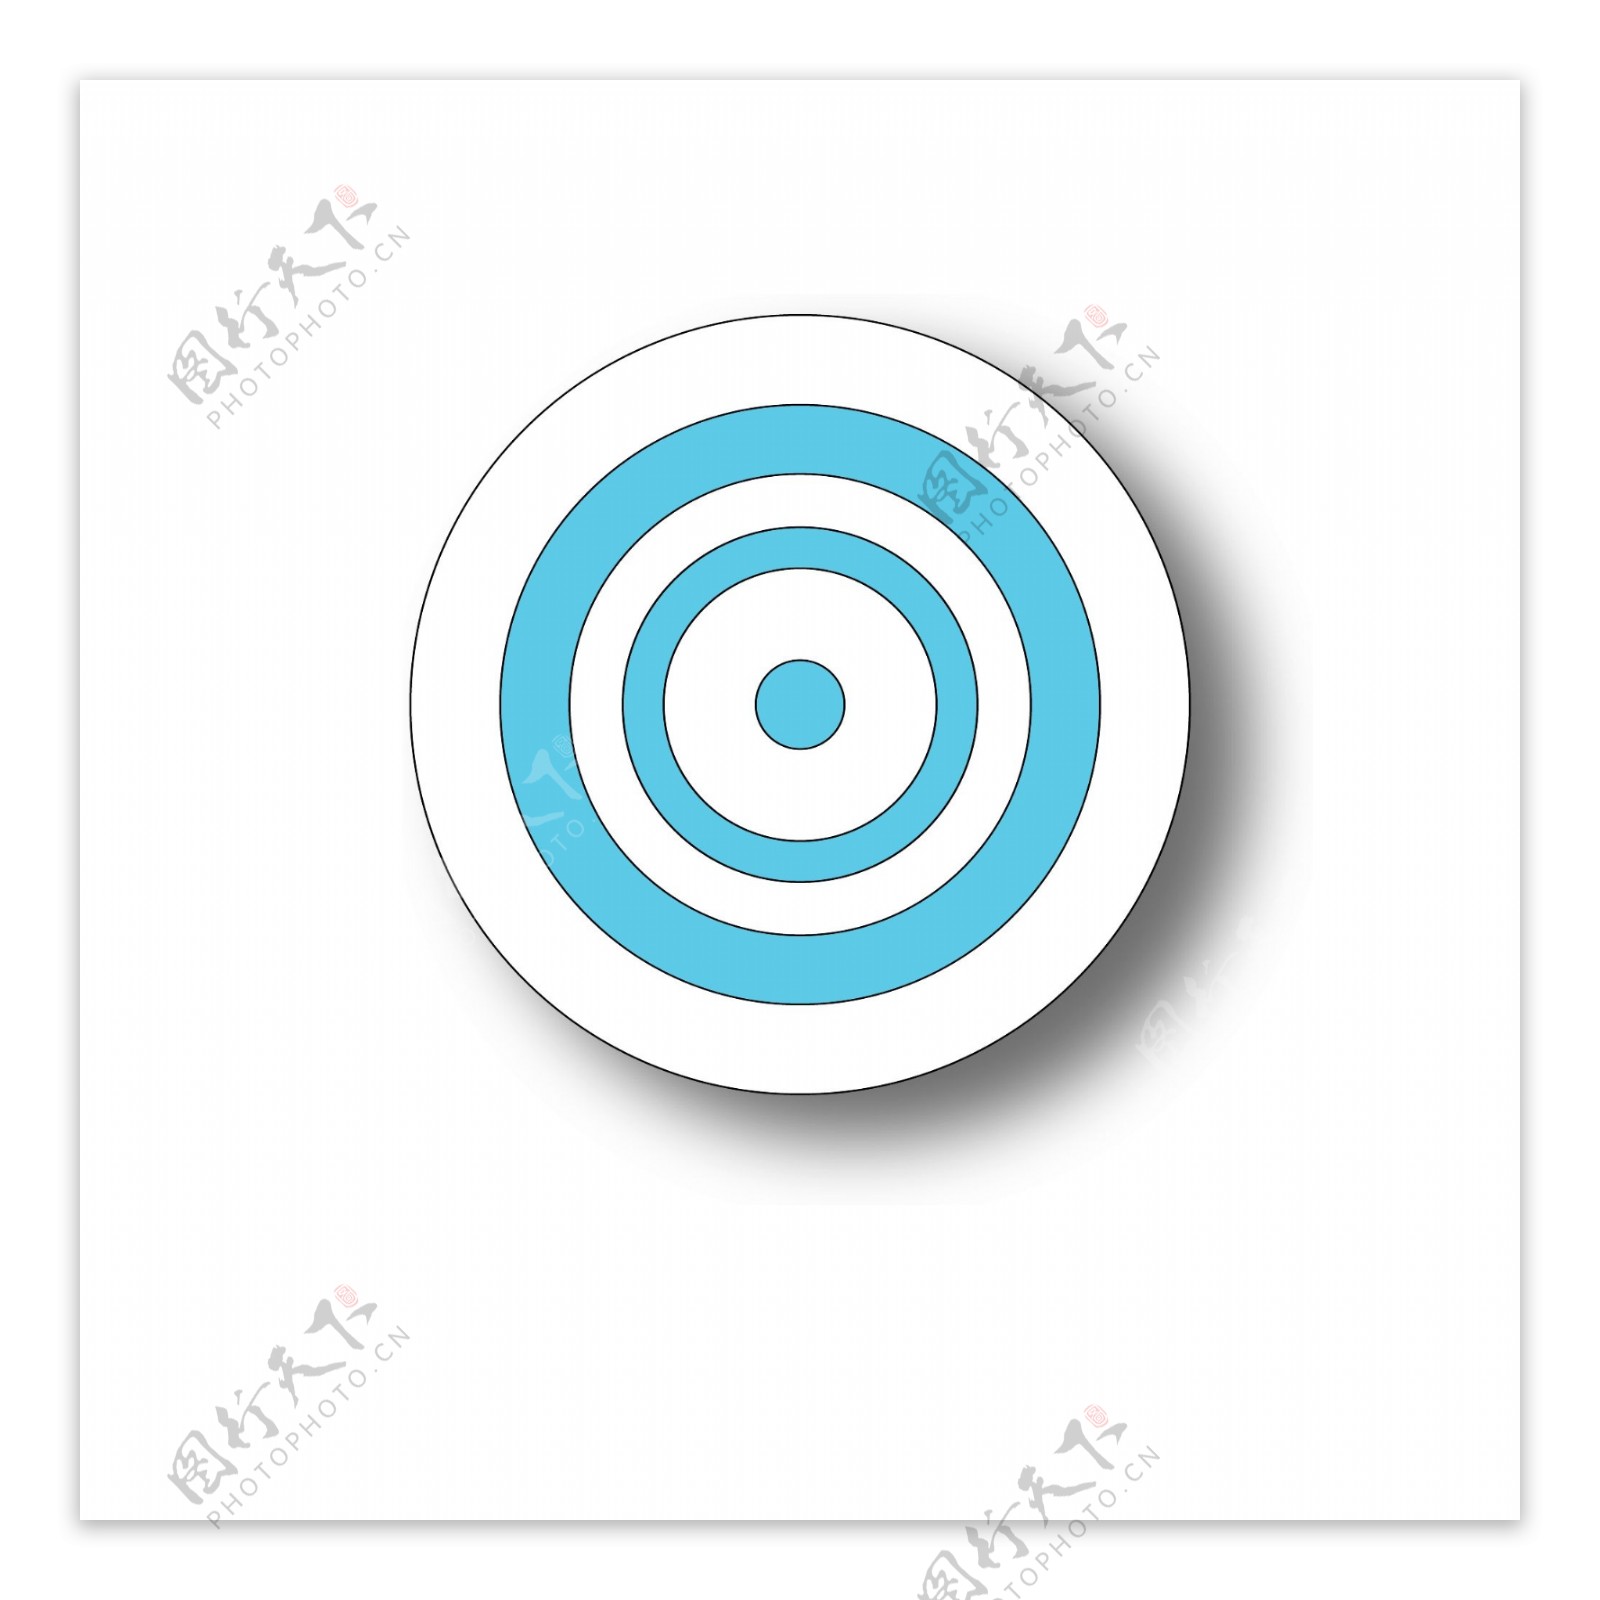 蓝色圆环目标靶心元素